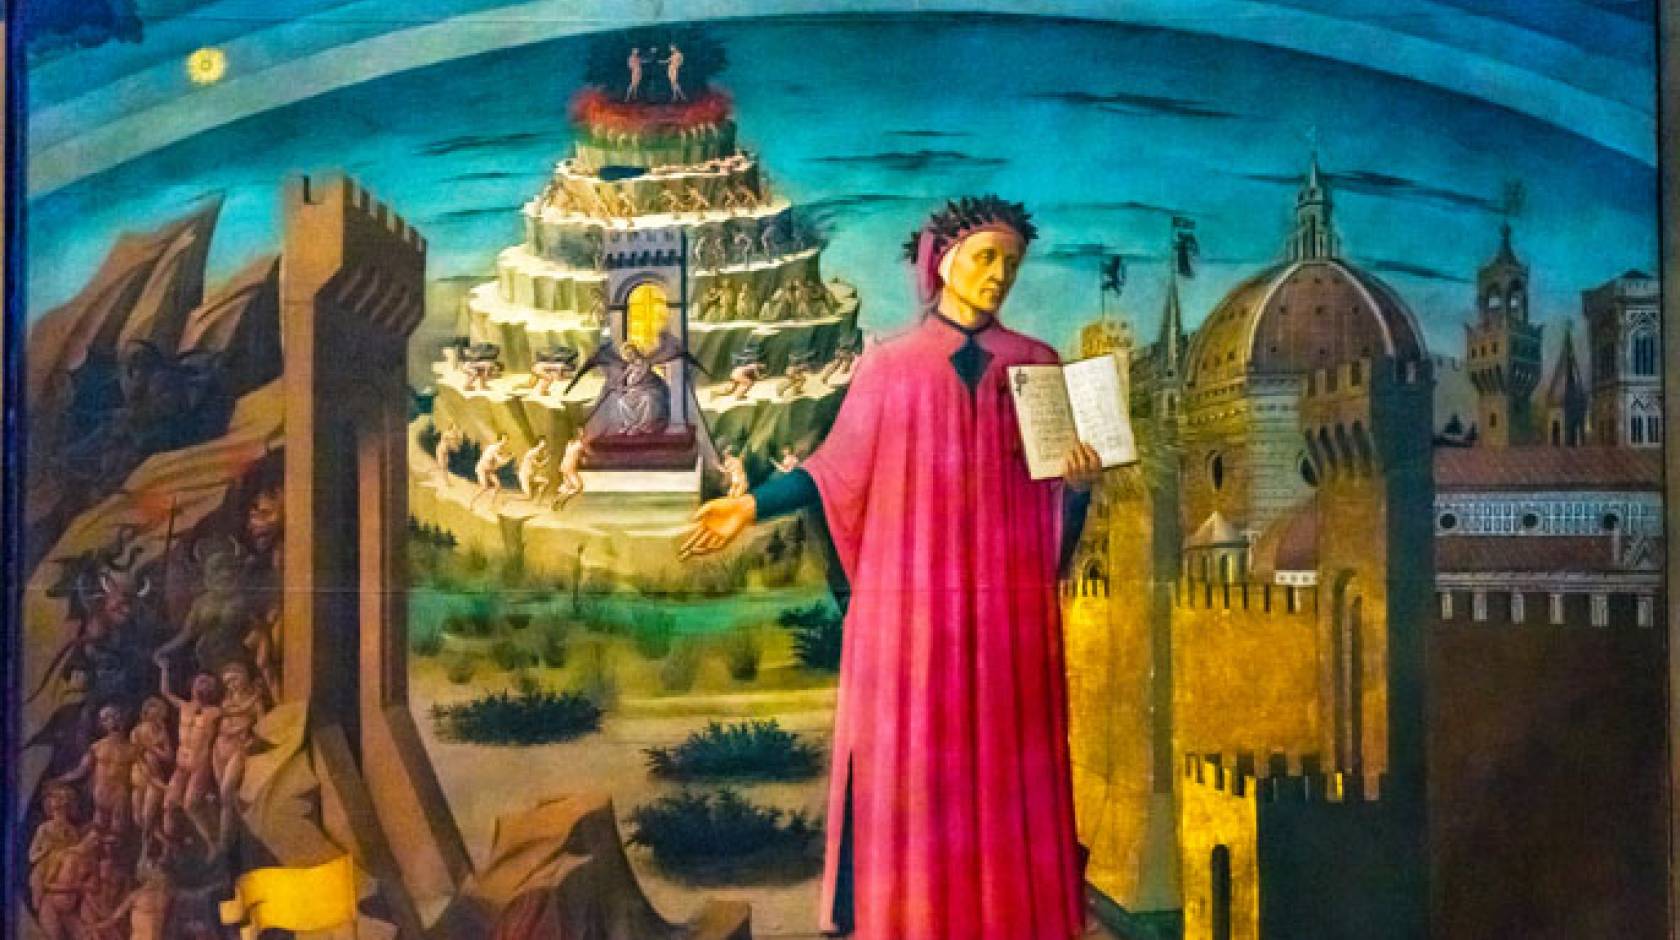 Domenico di Michelino Dante Divine Comedy Painting Duomo Cathedral Santa Maria del Fiore Church Florence Italy. Painting created 1465